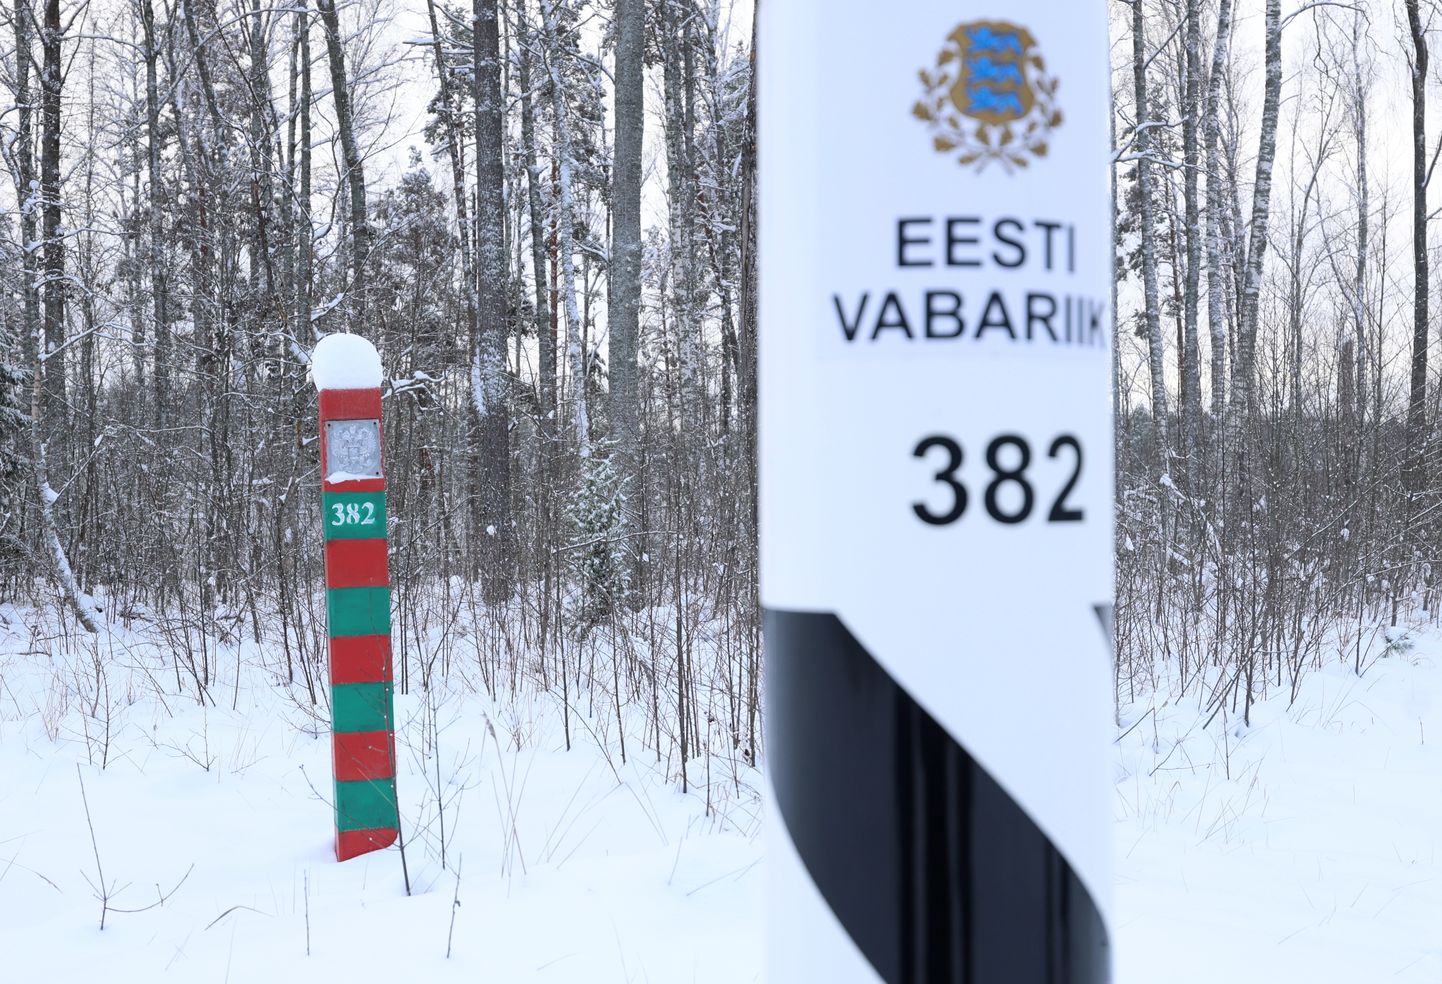 Пограничные столбы России и Эстонии в районе Саатсеского сапога в Сетомаа, где можно легально оказаться на территории РФ без стандартного контроля при пересечении границ. Ноябрь 2023 года.